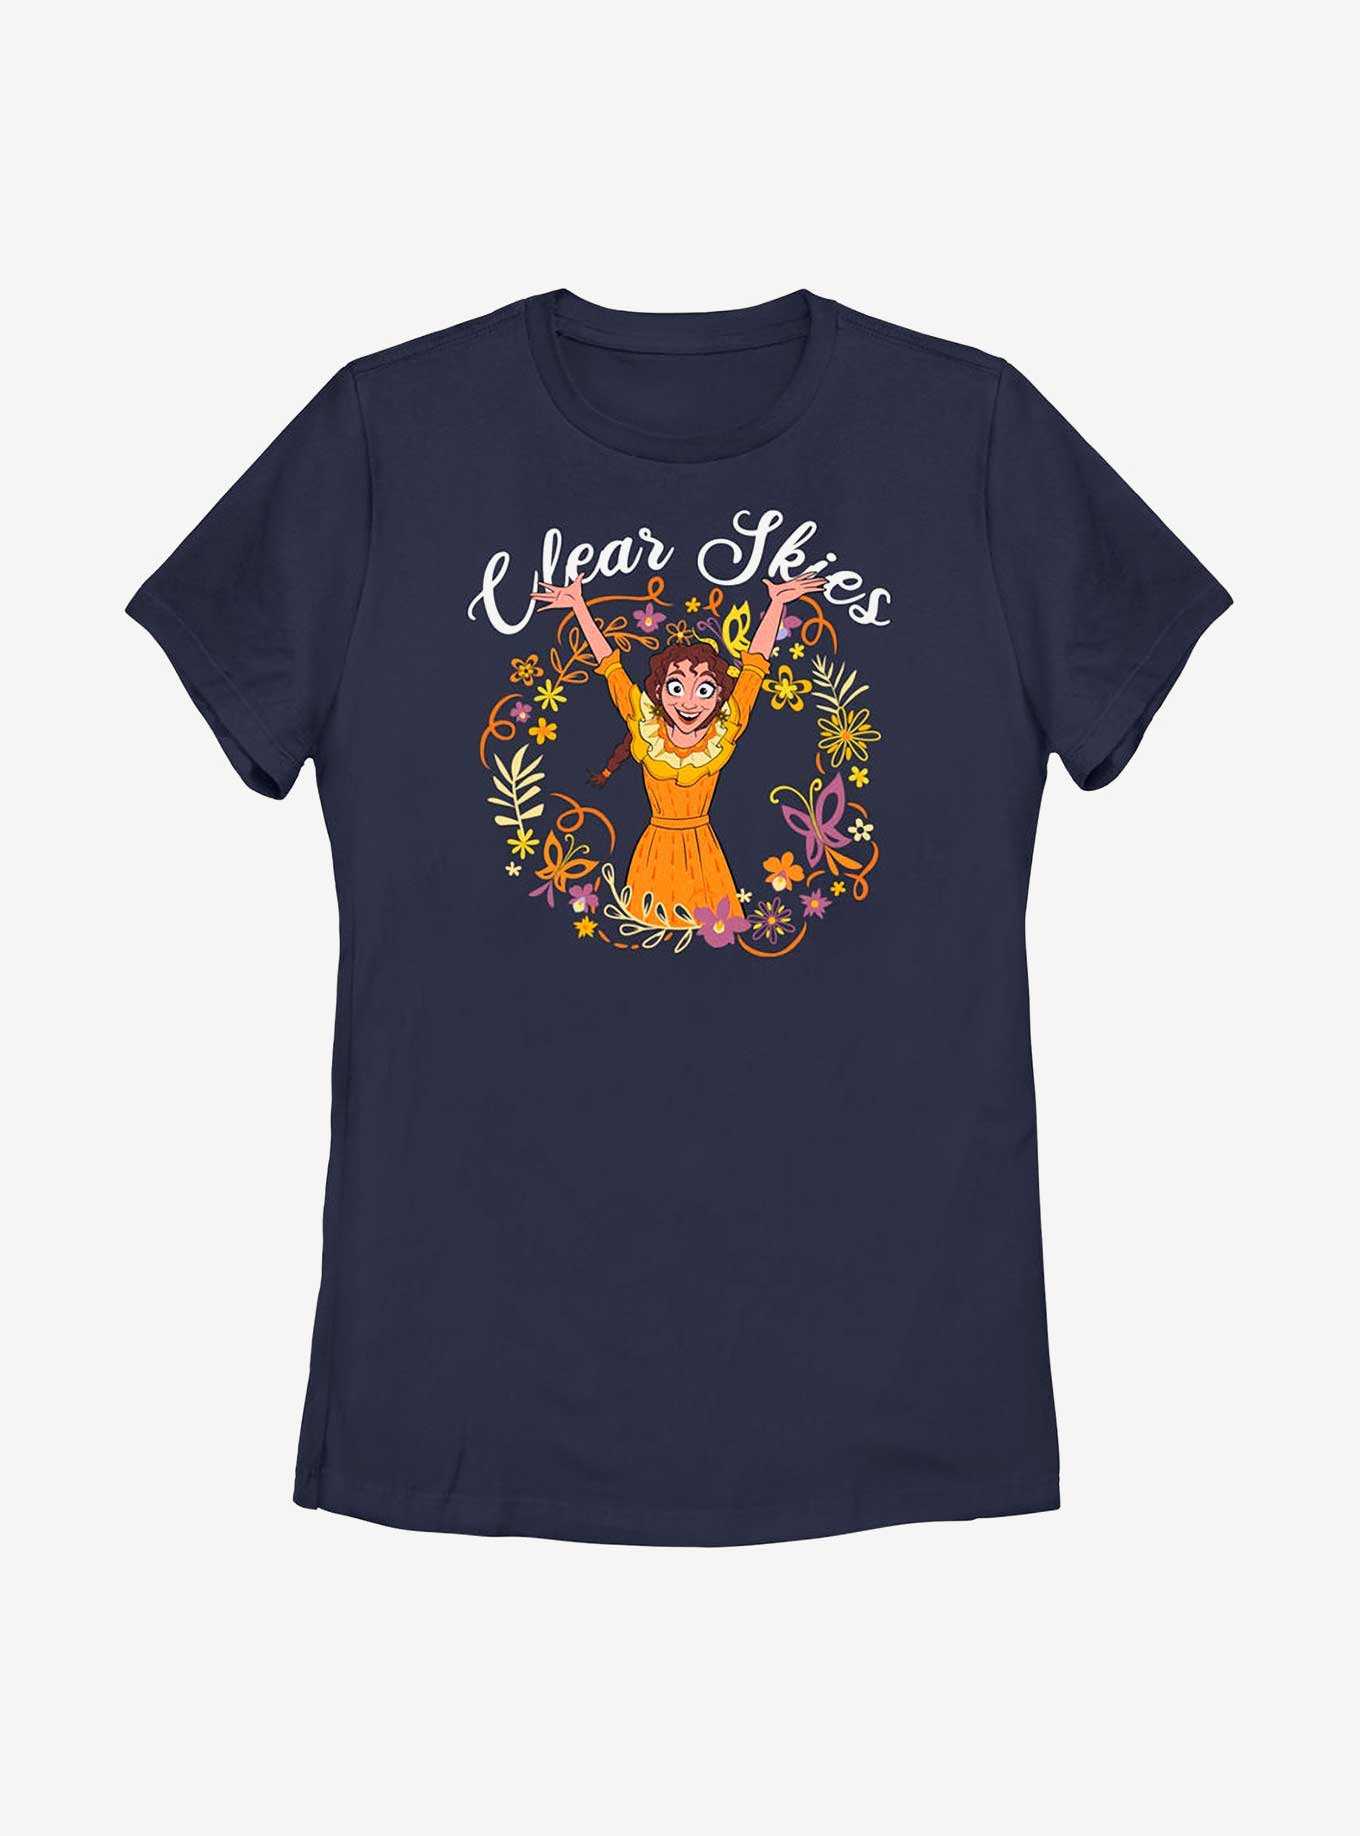 Disney Encanto Pepa Clear Skies Womens T-Shirt, , hi-res